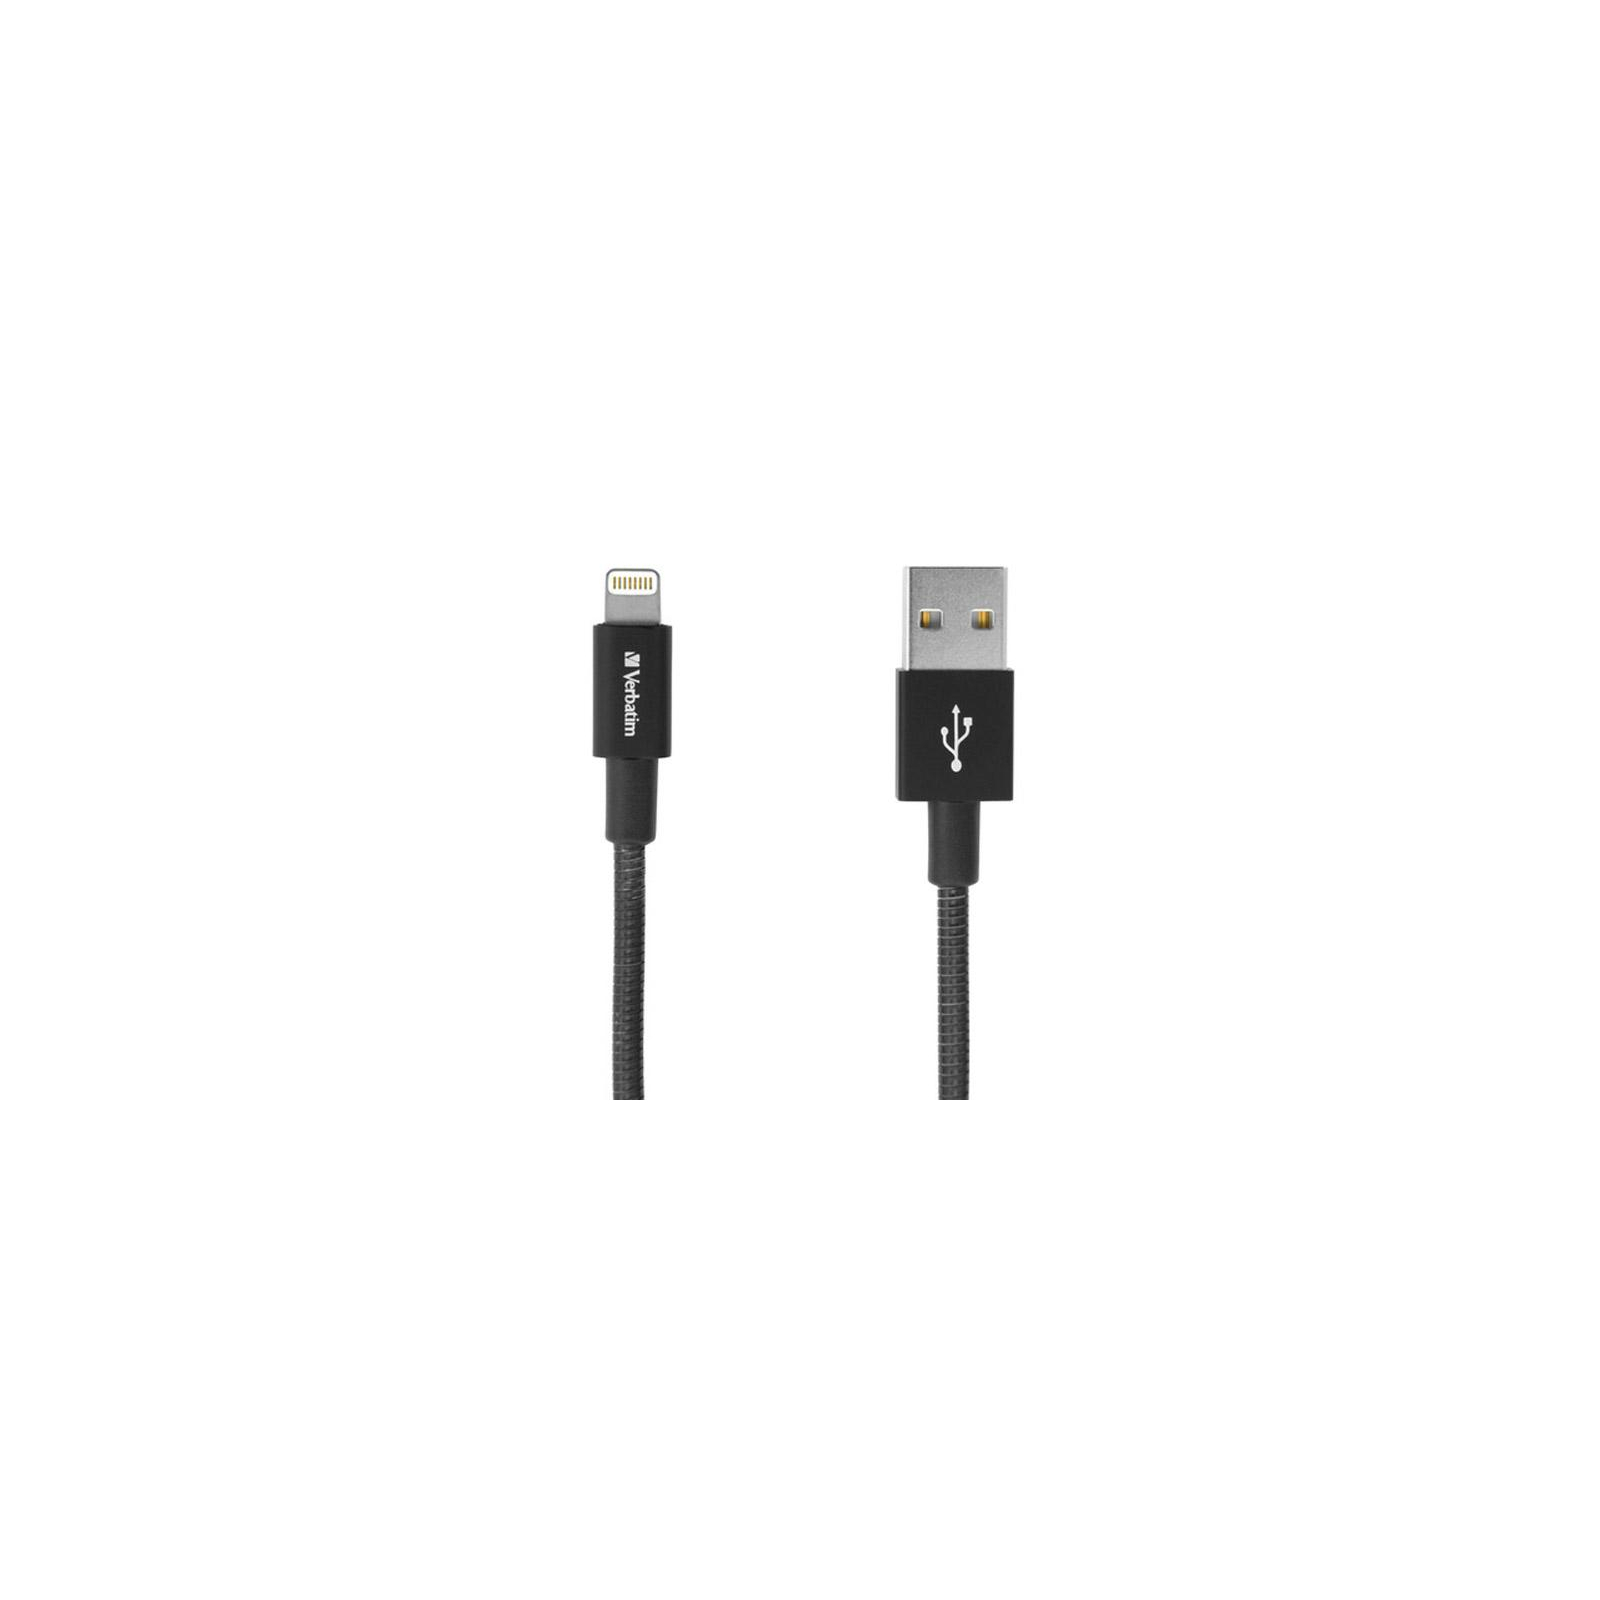 Дата кабель USB 2.0 AM to Lightning 1.0m black Verbatim (48858) изображение 2